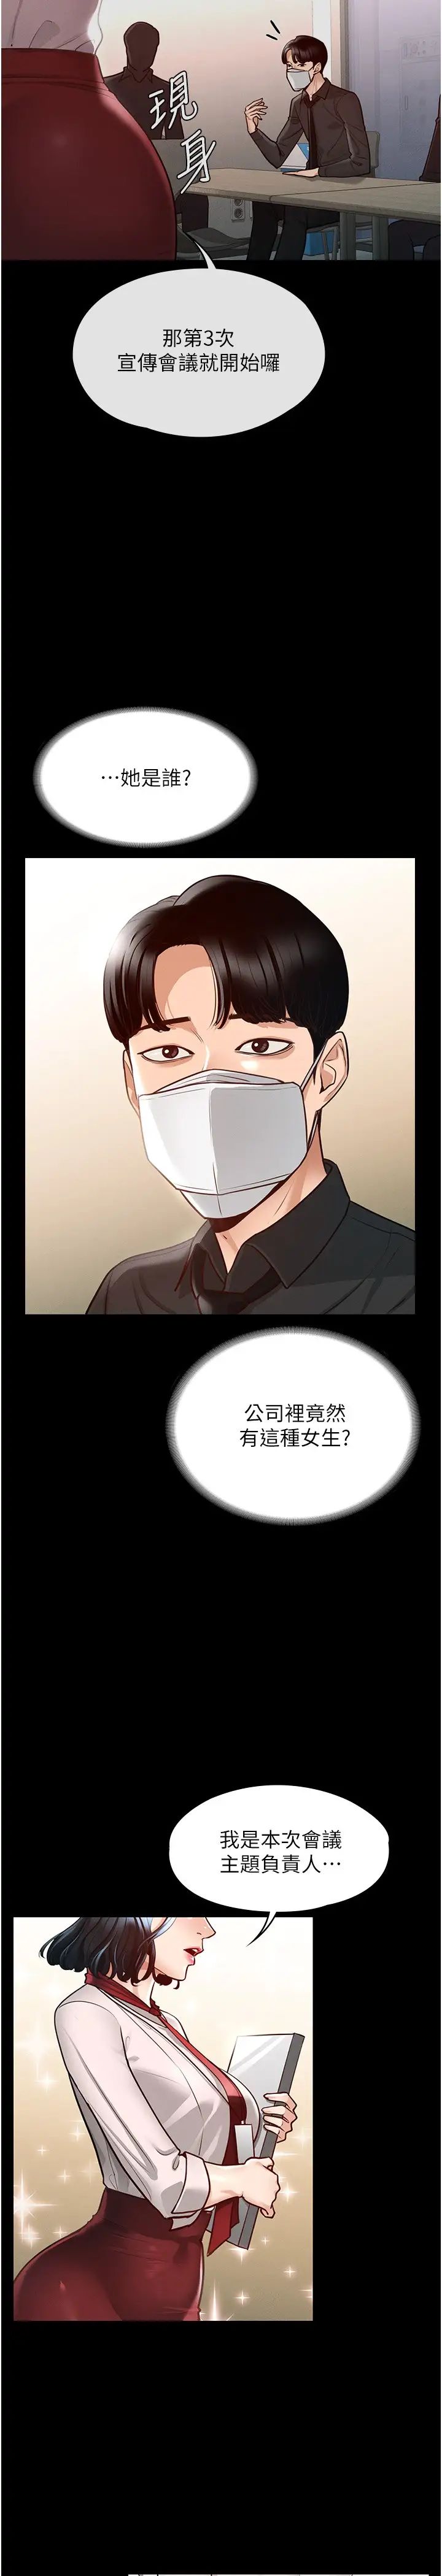 韩国污漫画 超級公務員 第4话 无所不能的「攻」务系统 29